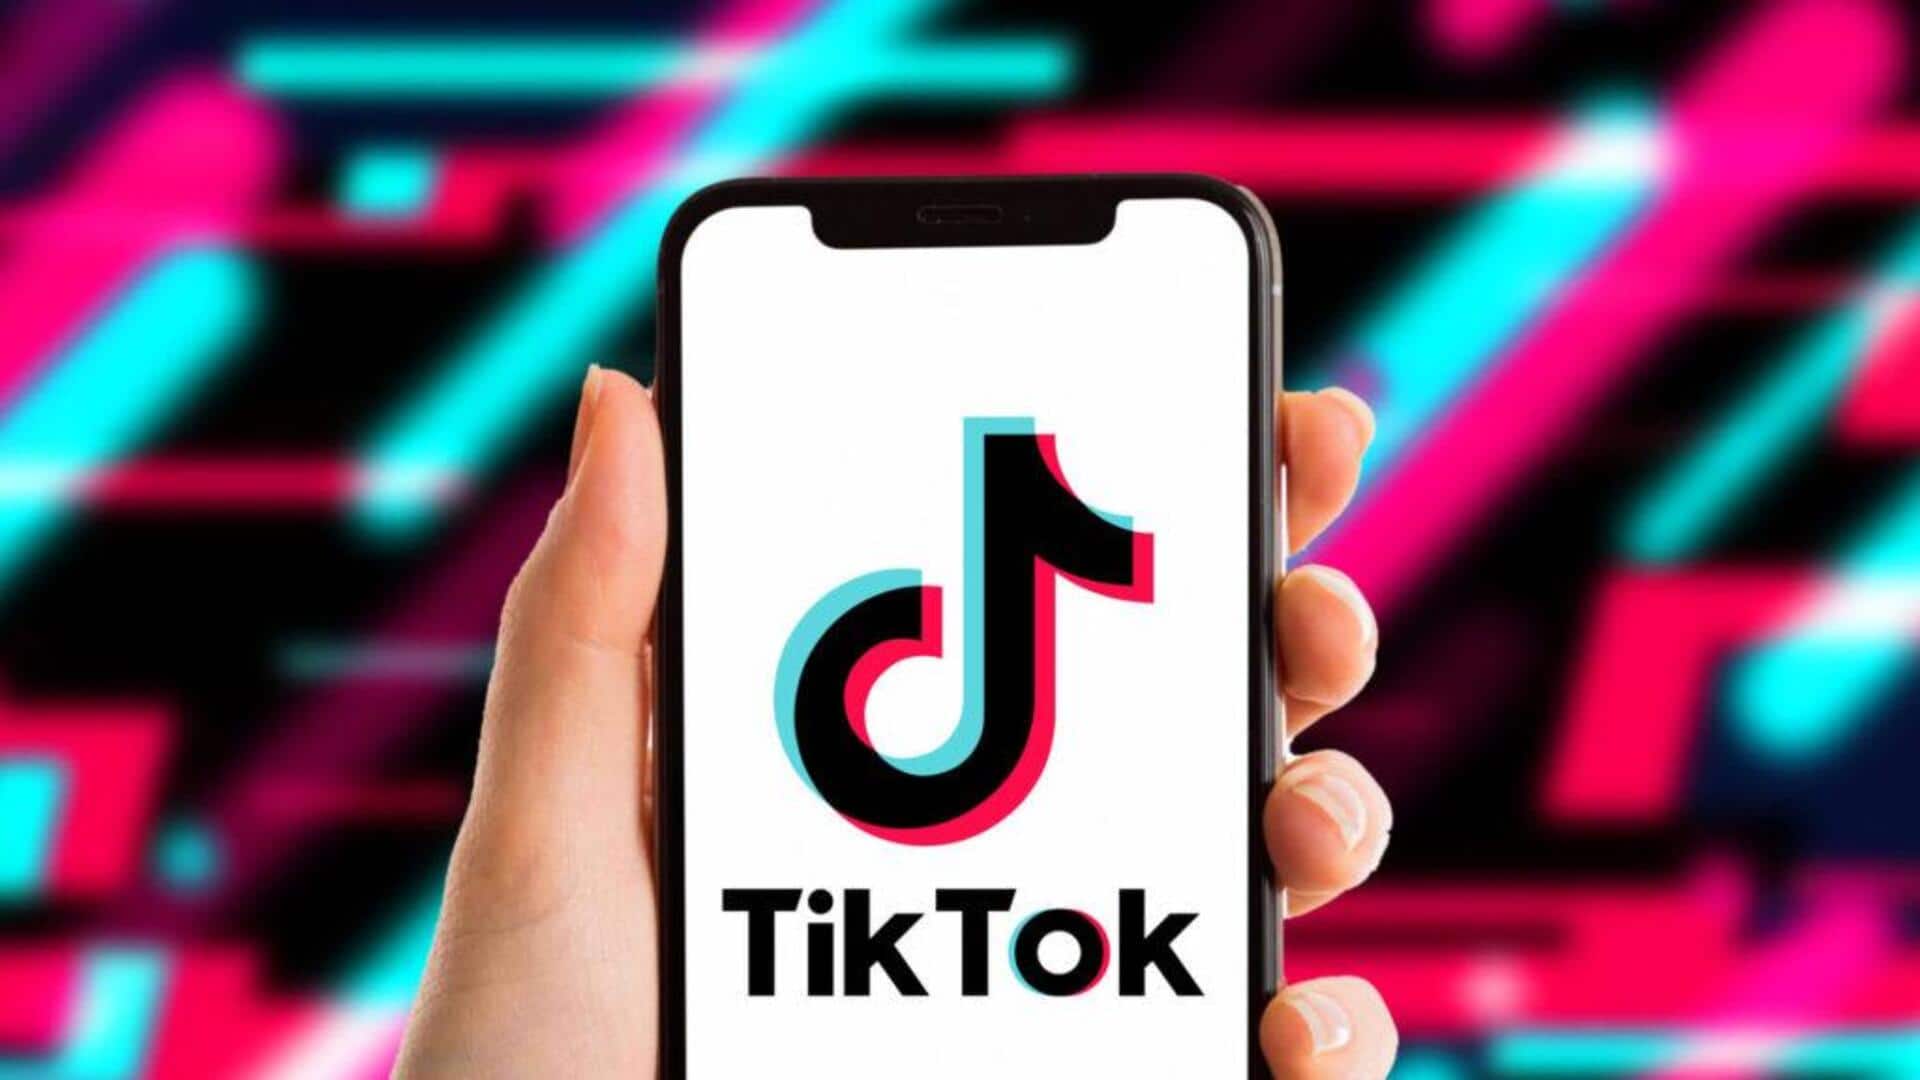 TikTok will reward creators who produce search-friendly content